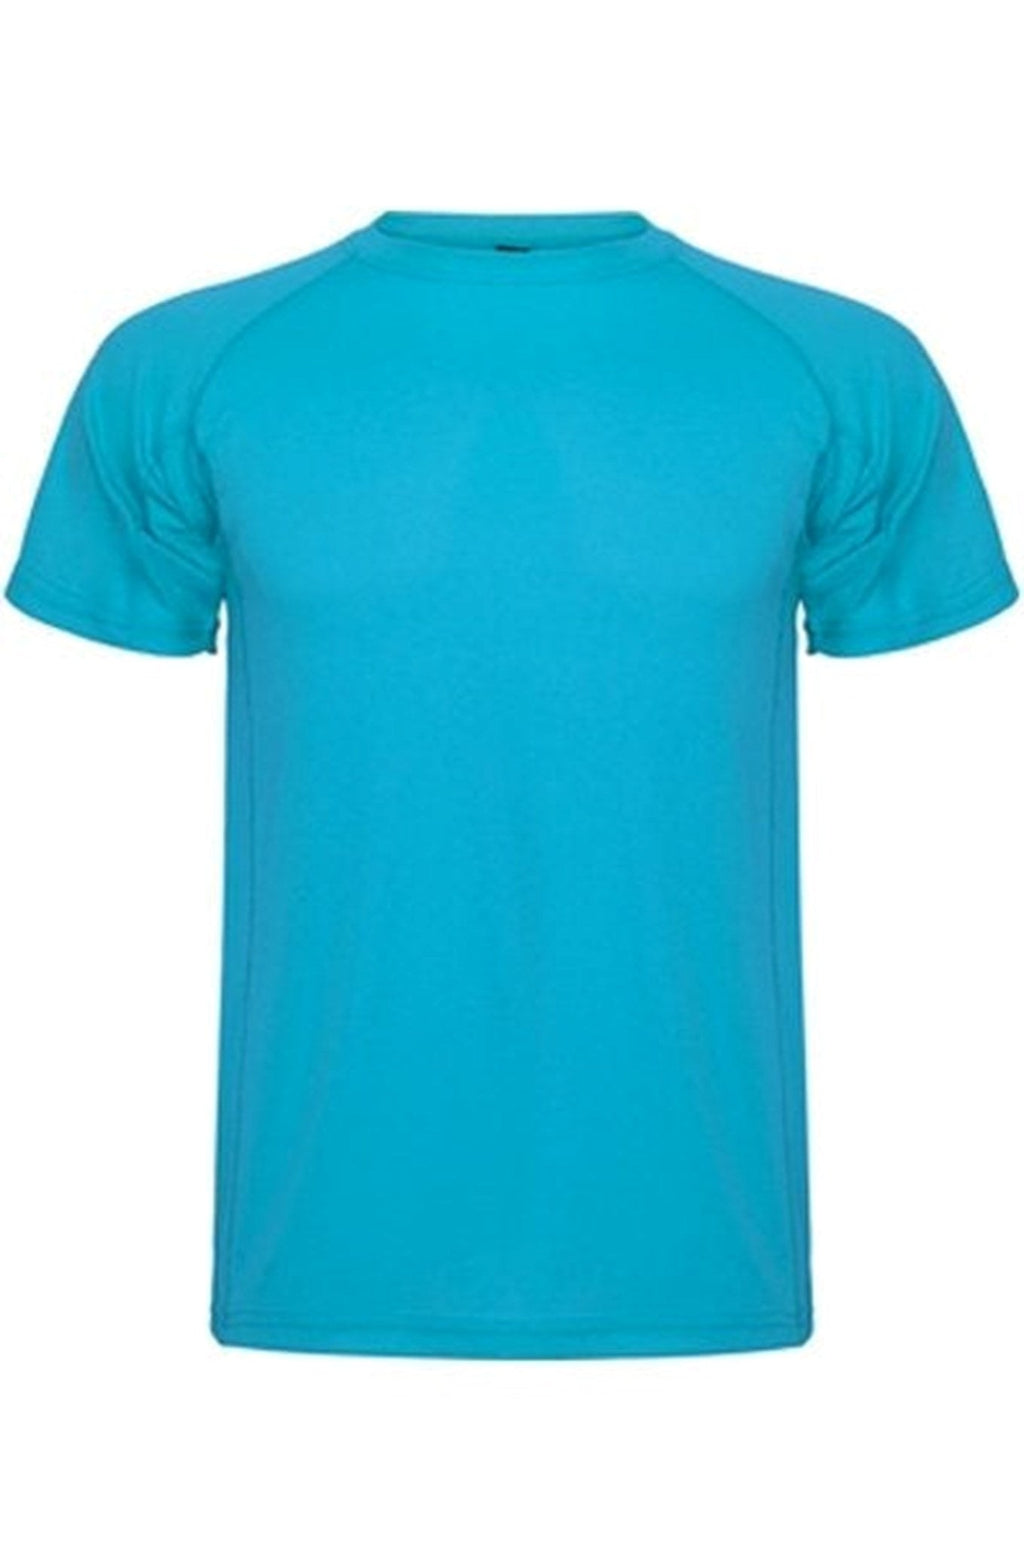 Tréningové tričko - tyrkysová modrá